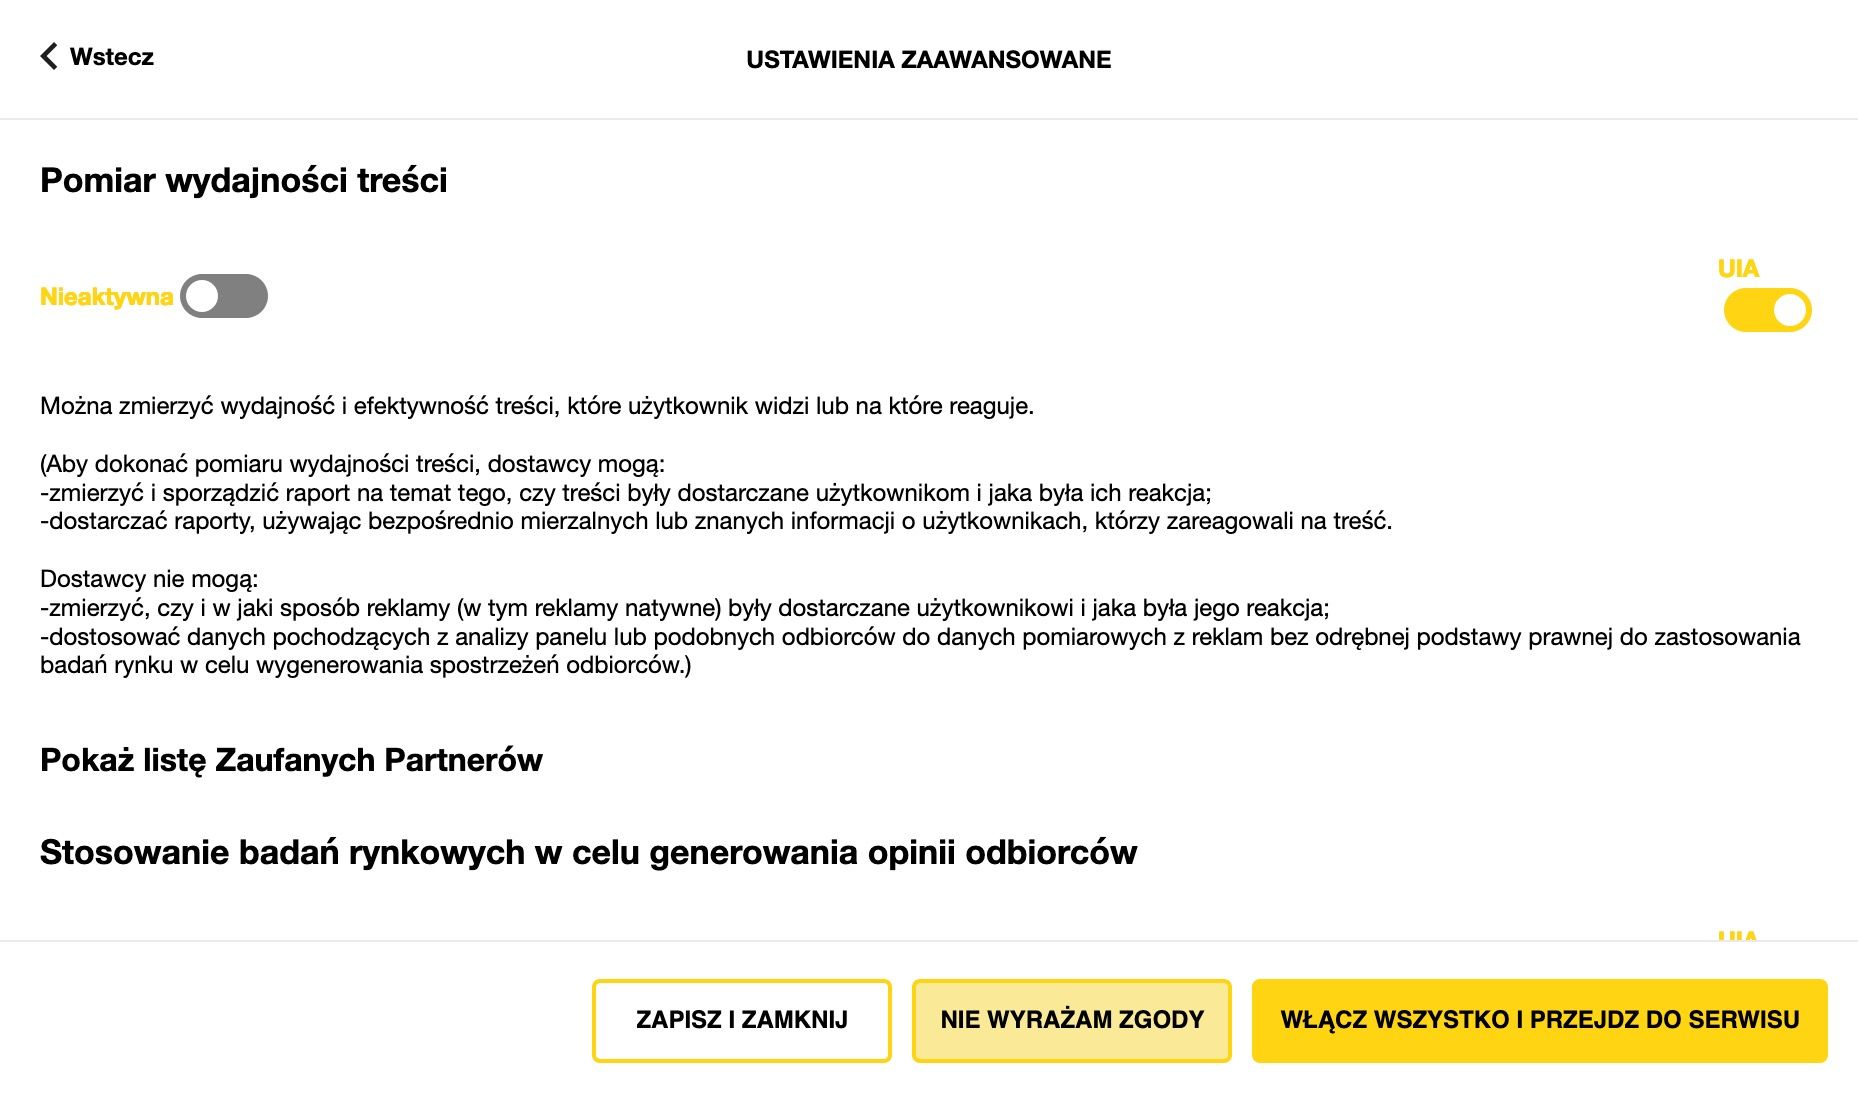 Okienko na stronie onet.pl, cel: Pomiar wydajności treści, po prawej przełącznik UIA akceptujący uzasadniony interes administratora dla tego celu